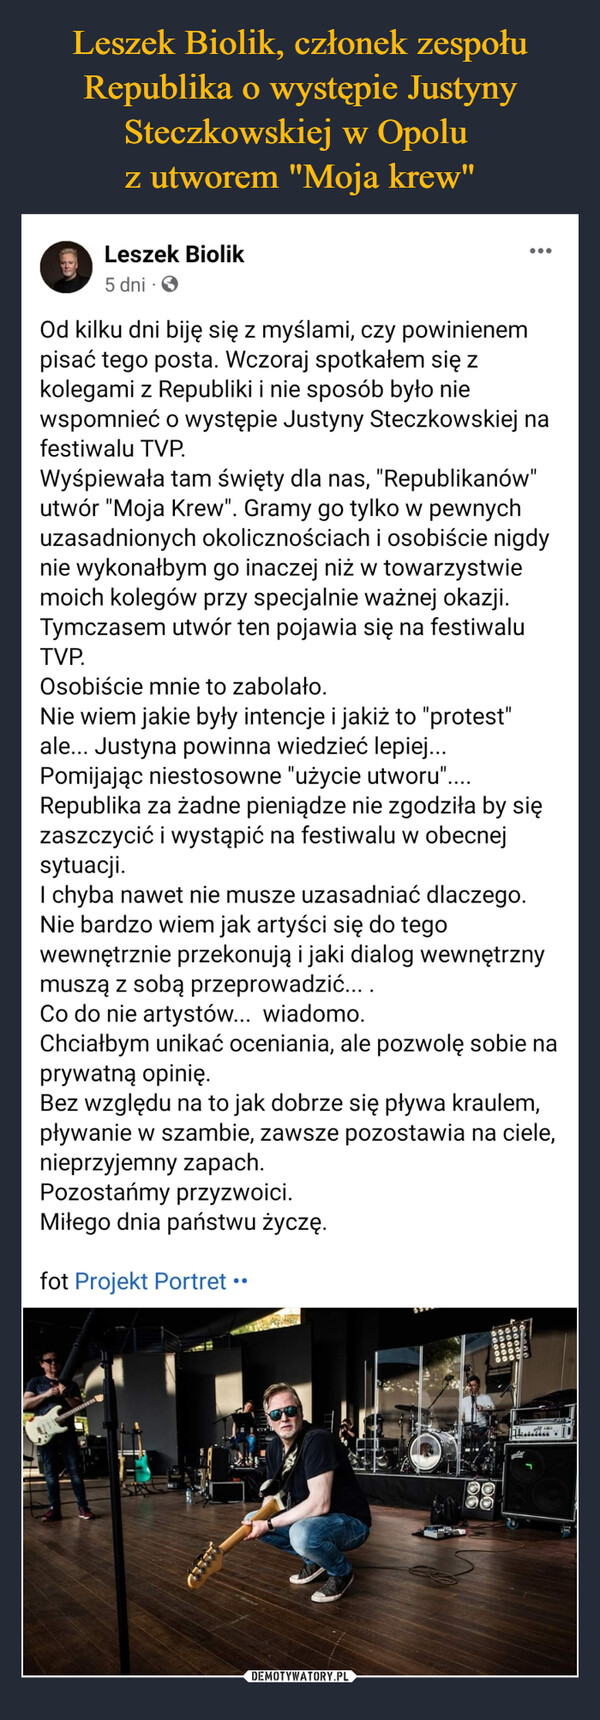 Leszek Biolik, członek zespołu Republika o występie Justyny Steczkowskiej w Opolu 
z utworem "Moja krew"